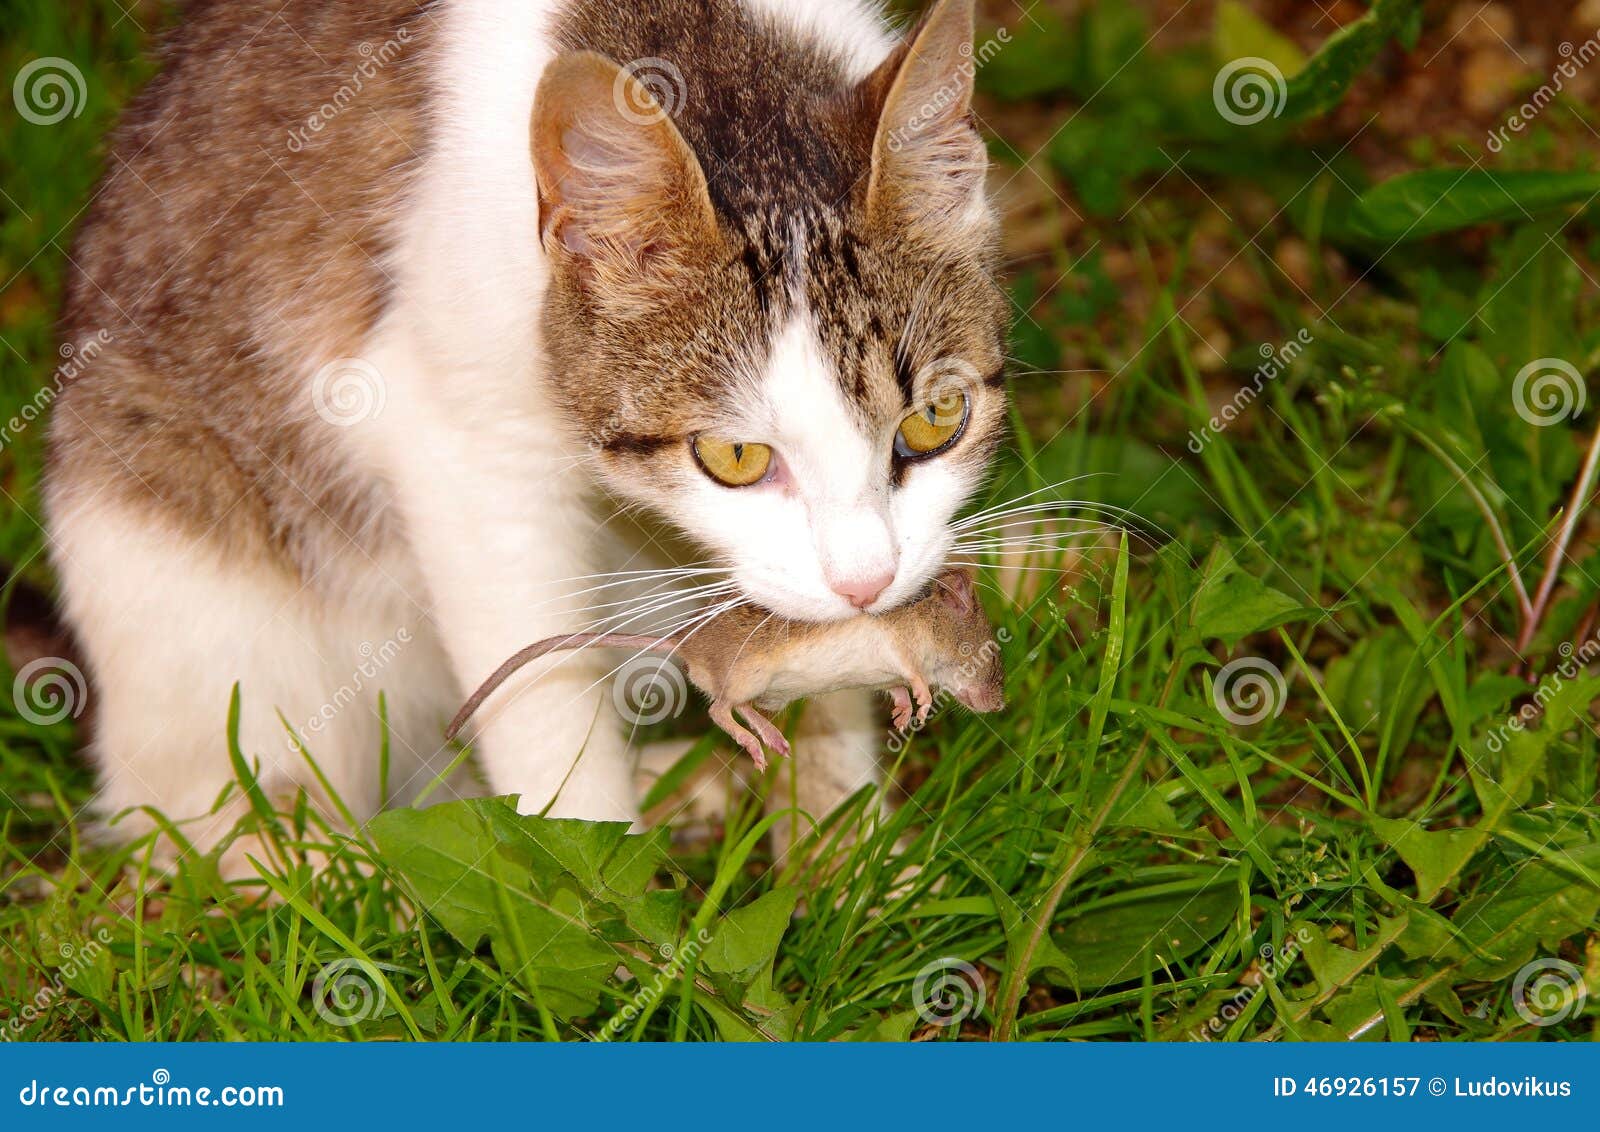 Katze und Maus. Katze hat die graue Maus im Mund